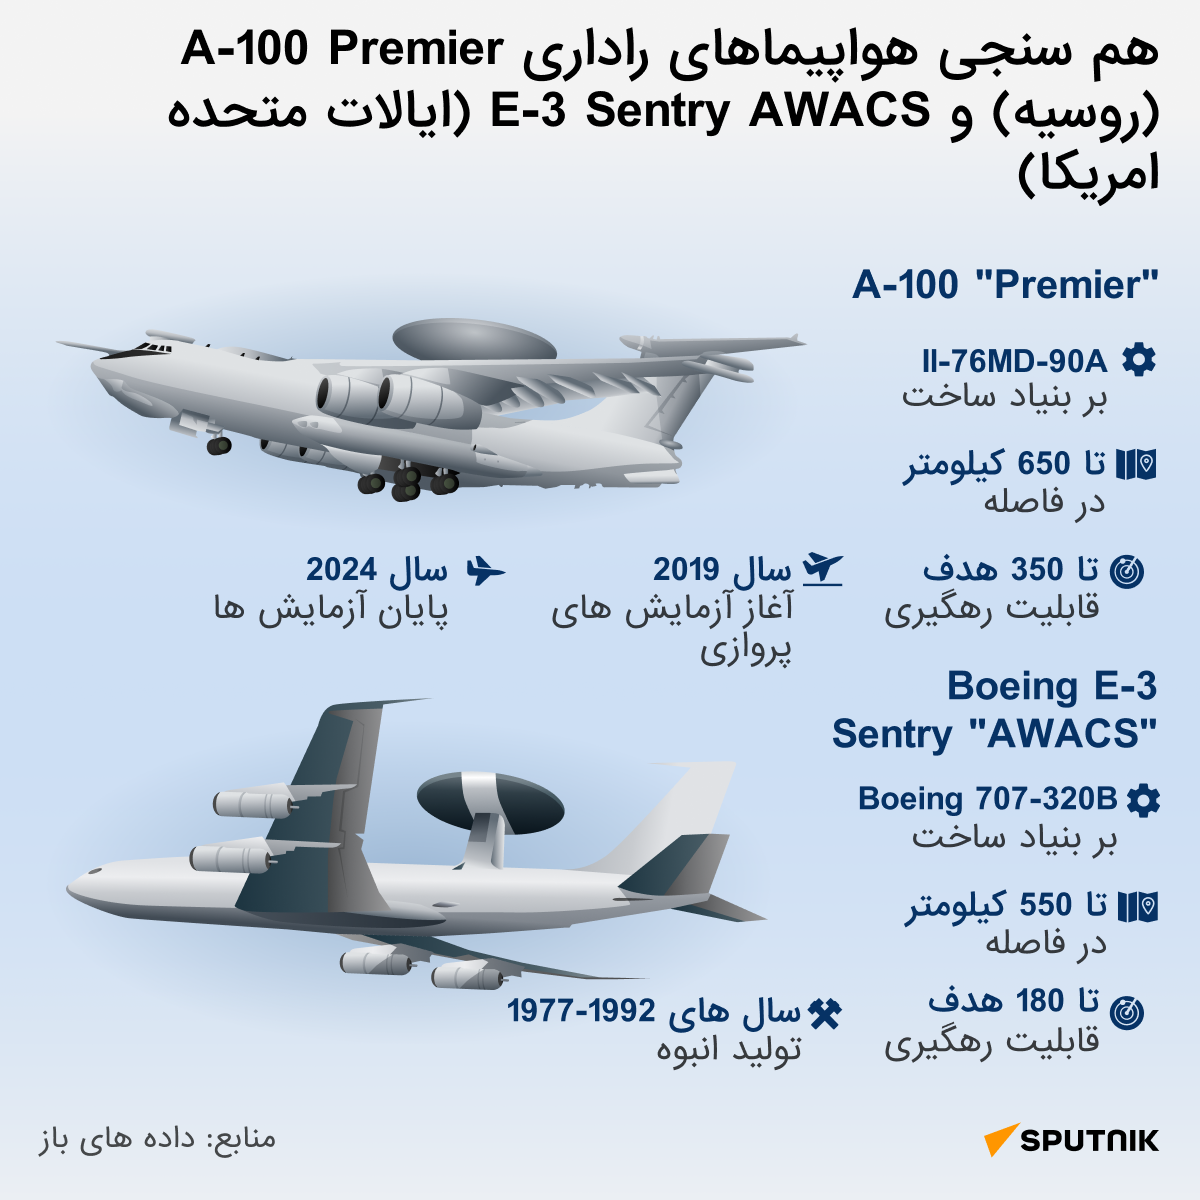 برخی از ویژگی های این هواپیما پیشتر اعلام شده است. اسپوتنیک اینفوگرافیکی تهیه کرده که در آن A-100 Premier را با بوئینگ E-3 Sentry AWACS مقایسه می کند. - اسپوتنیک افغانستان  